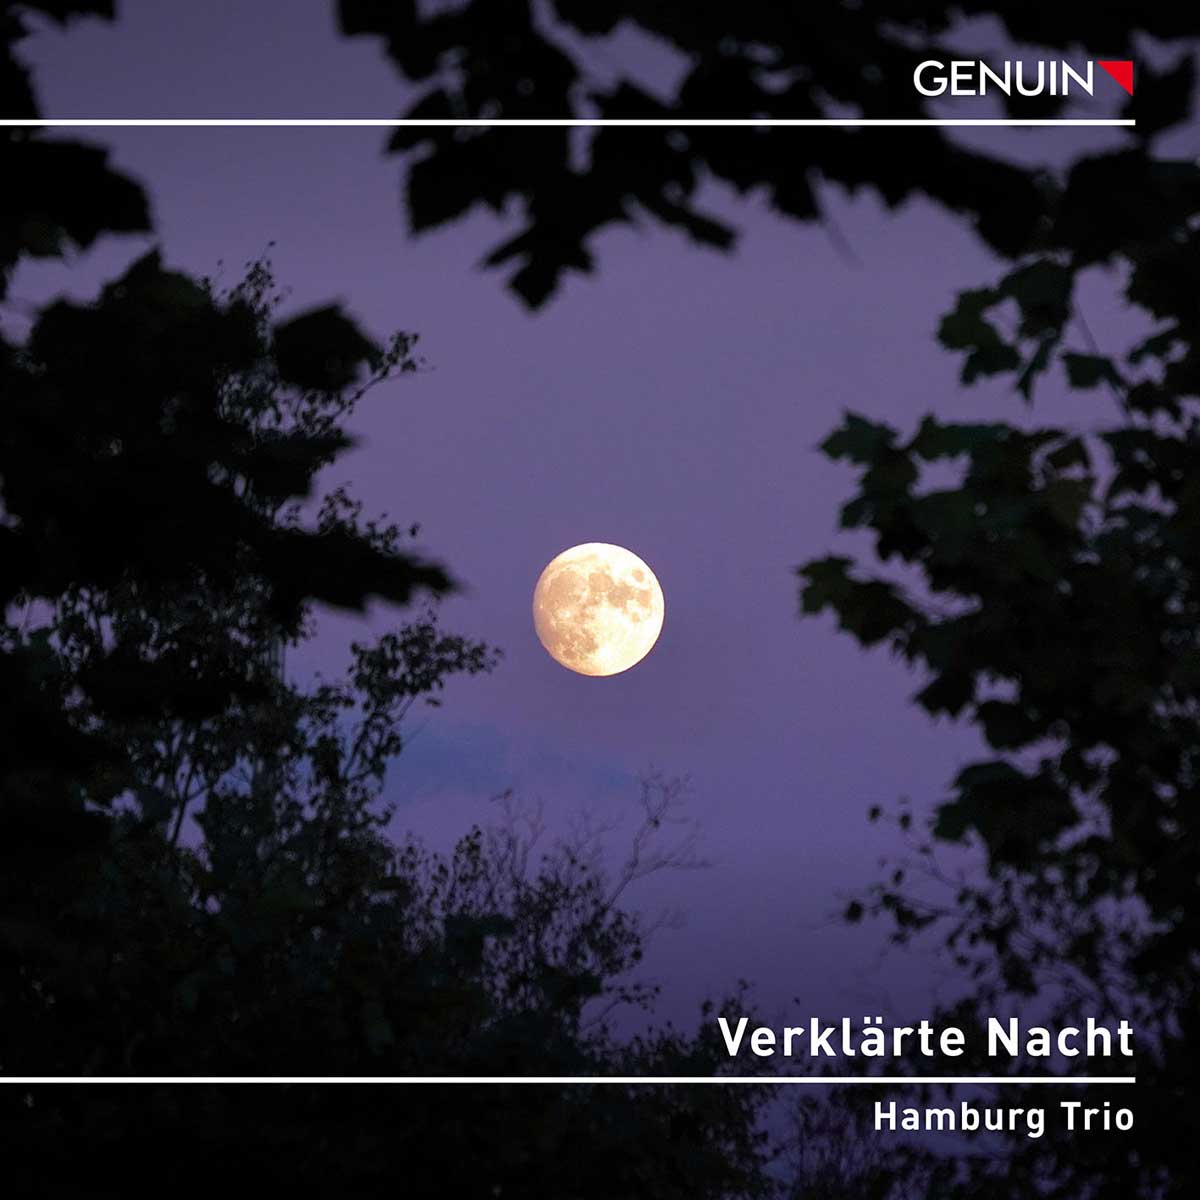 CD album cover 'Verklärte Nacht' (GEN 23812) with Hamburg Trio